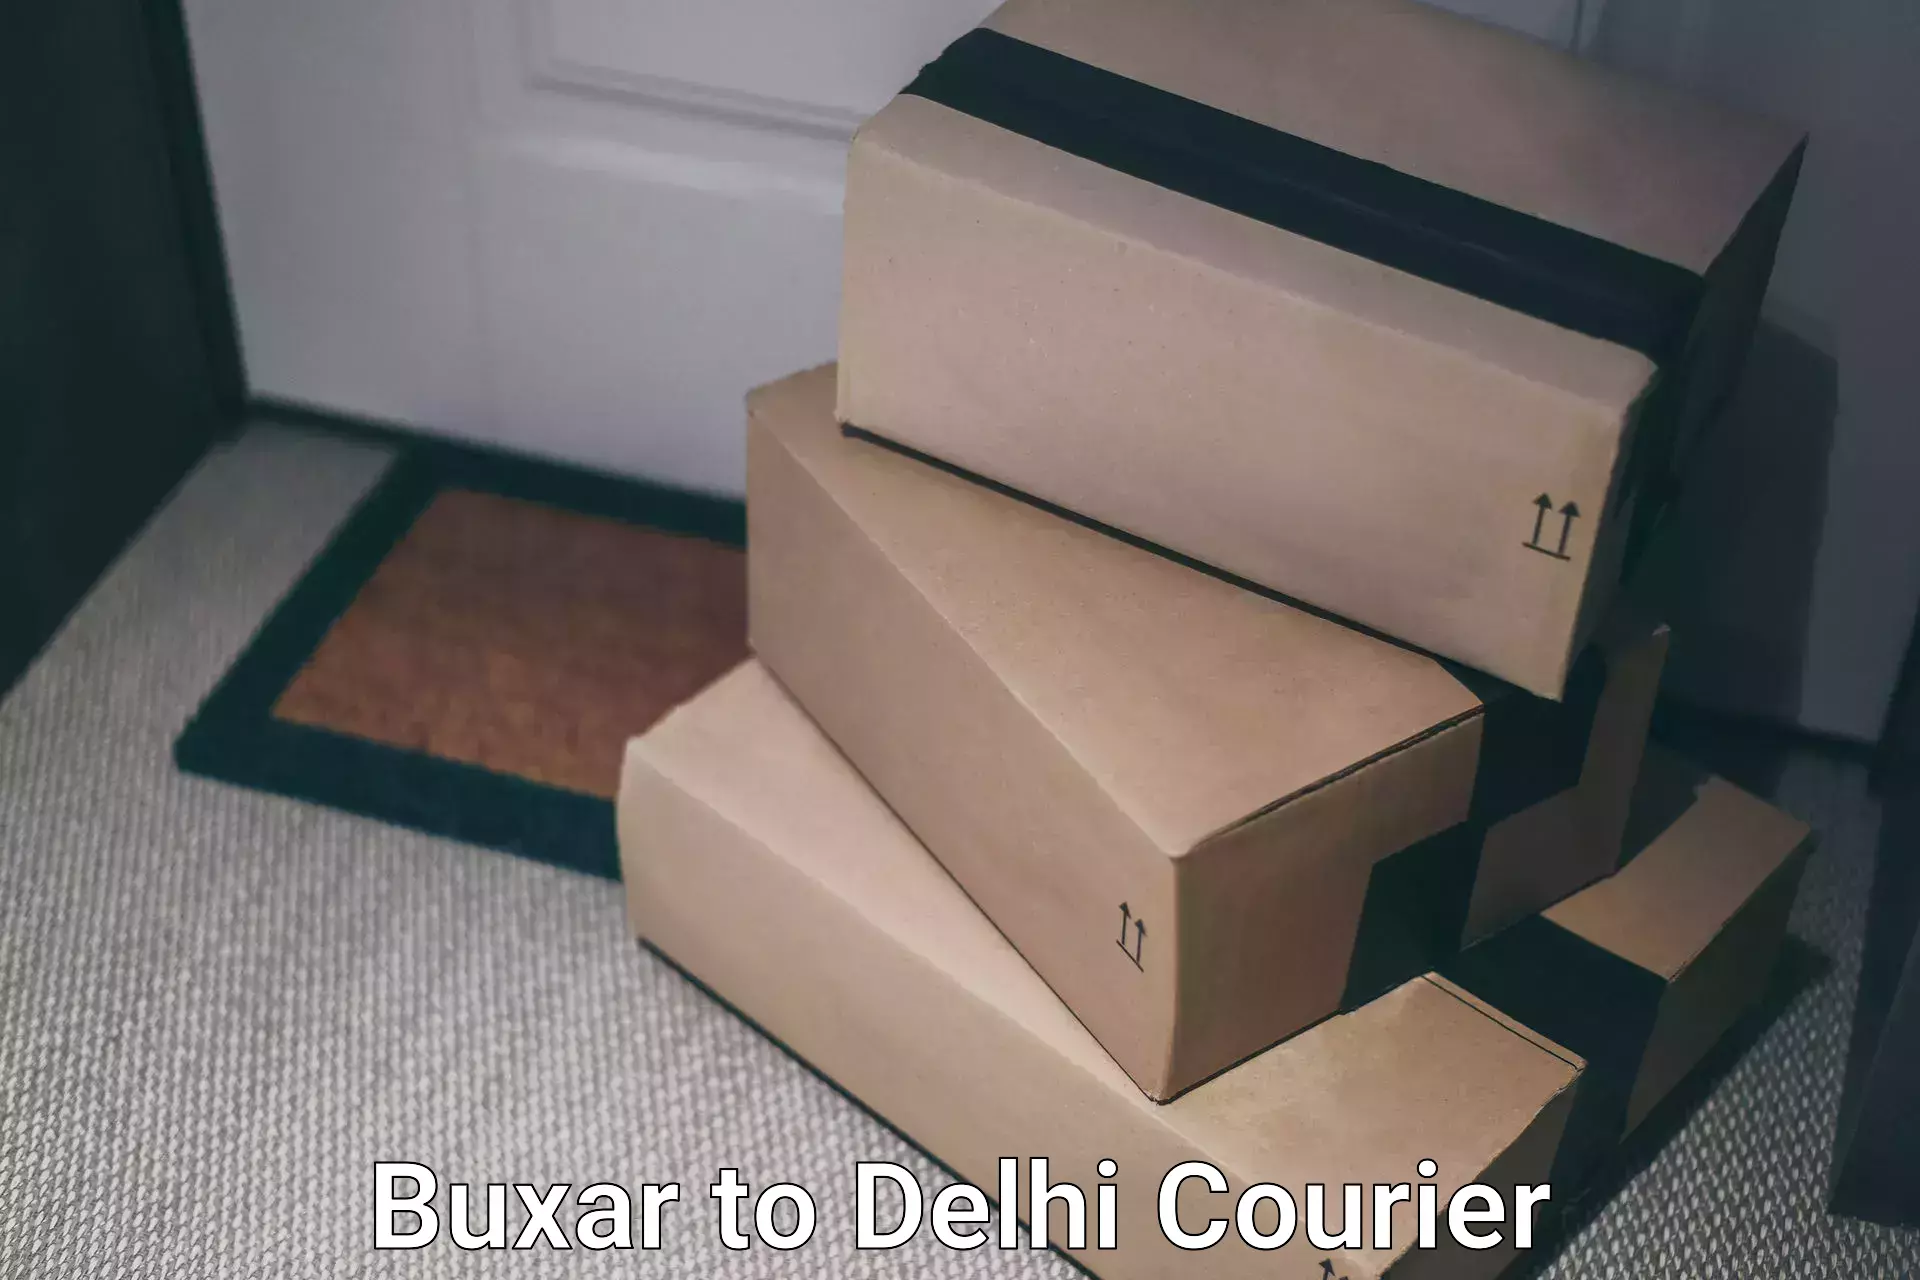 Overnight delivery services Buxar to Jamia Millia Islamia New Delhi